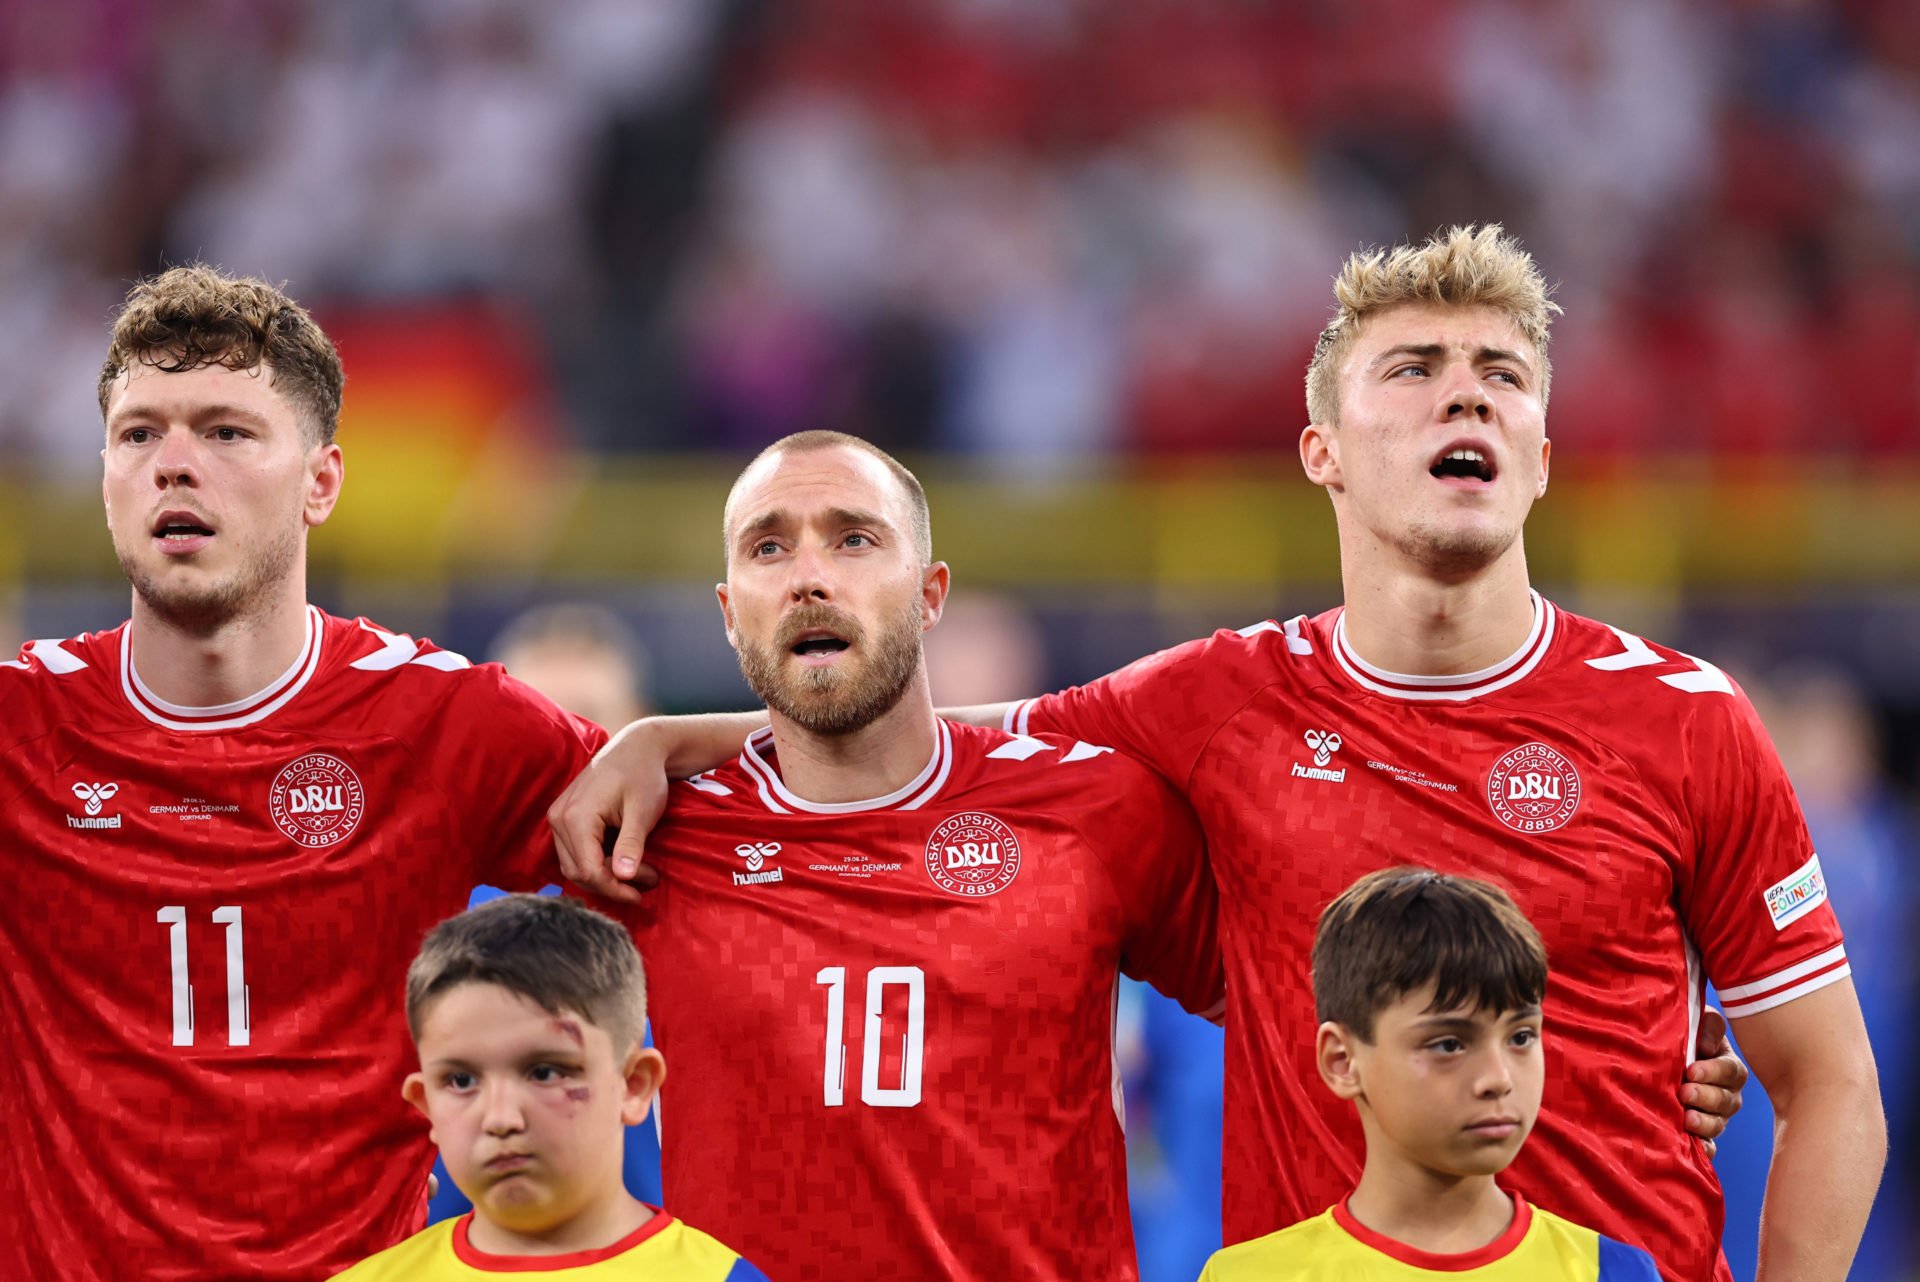 Rasmus Hojlund sagt, es habe ihm bei der EM-2024-Niederlage gegen Deutschland an „Schärfe“ gefehlt, Raphael van der Vaart kritisiert Christian Eriksen